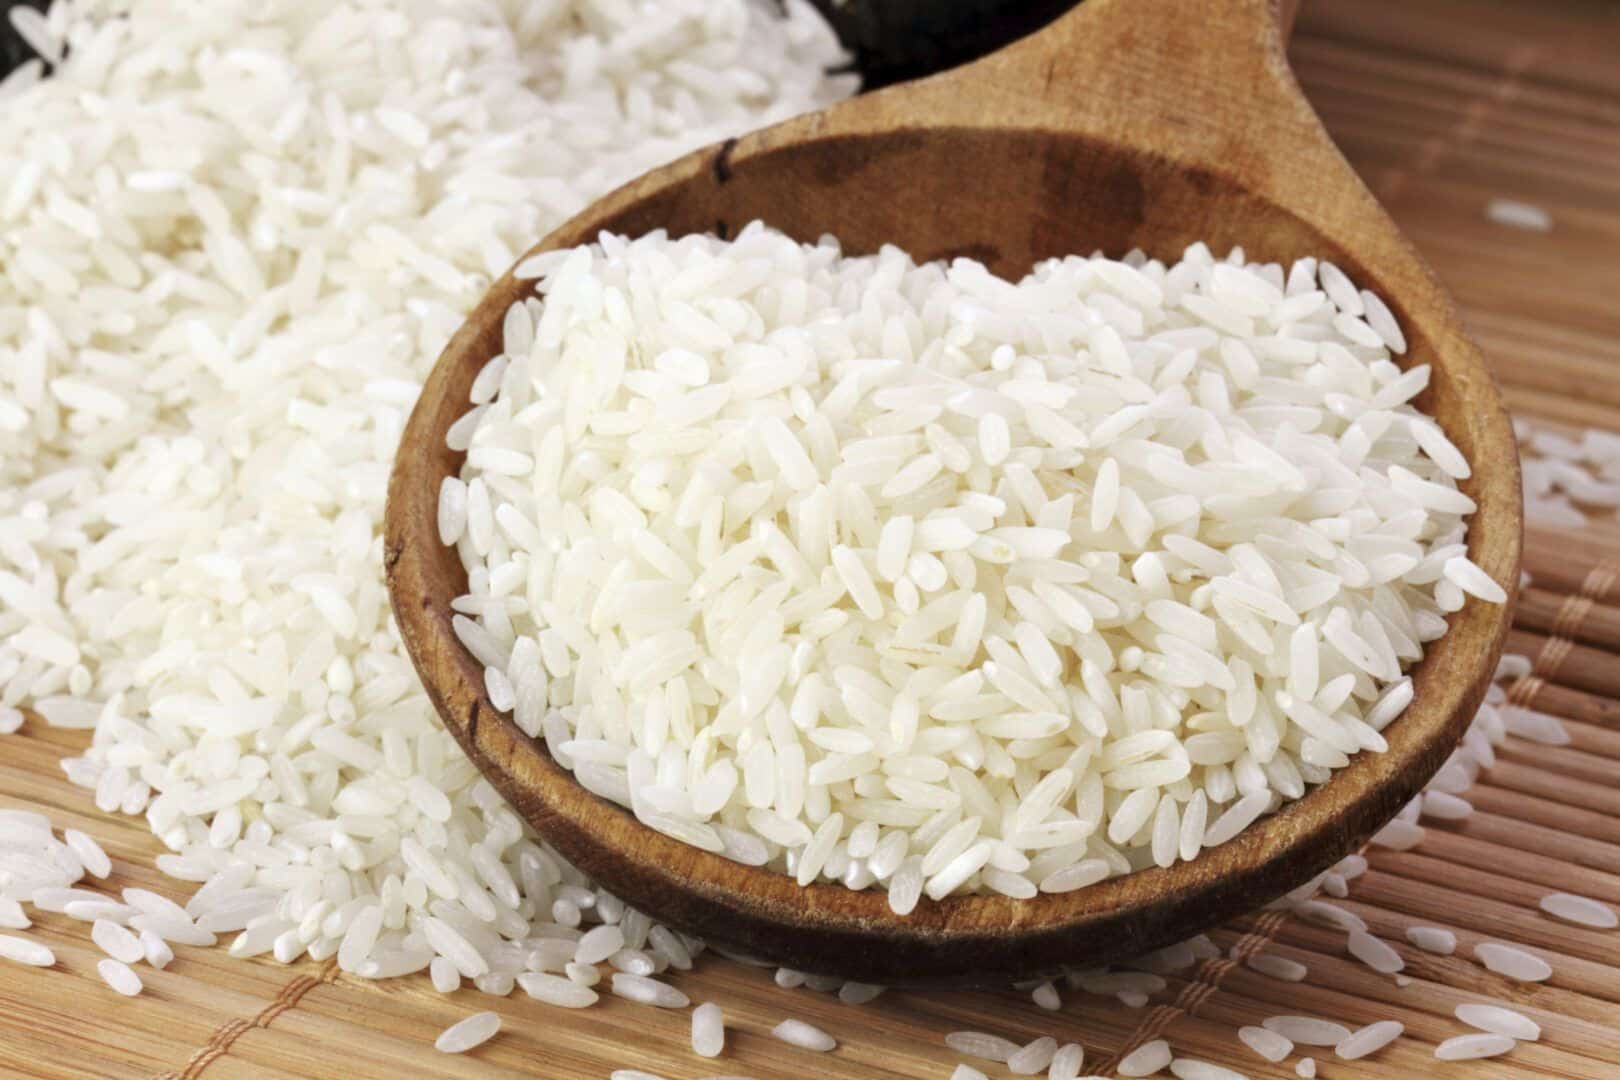 Substituir arroz, como fazer? Opções de alimentos + 3 receitas básicas